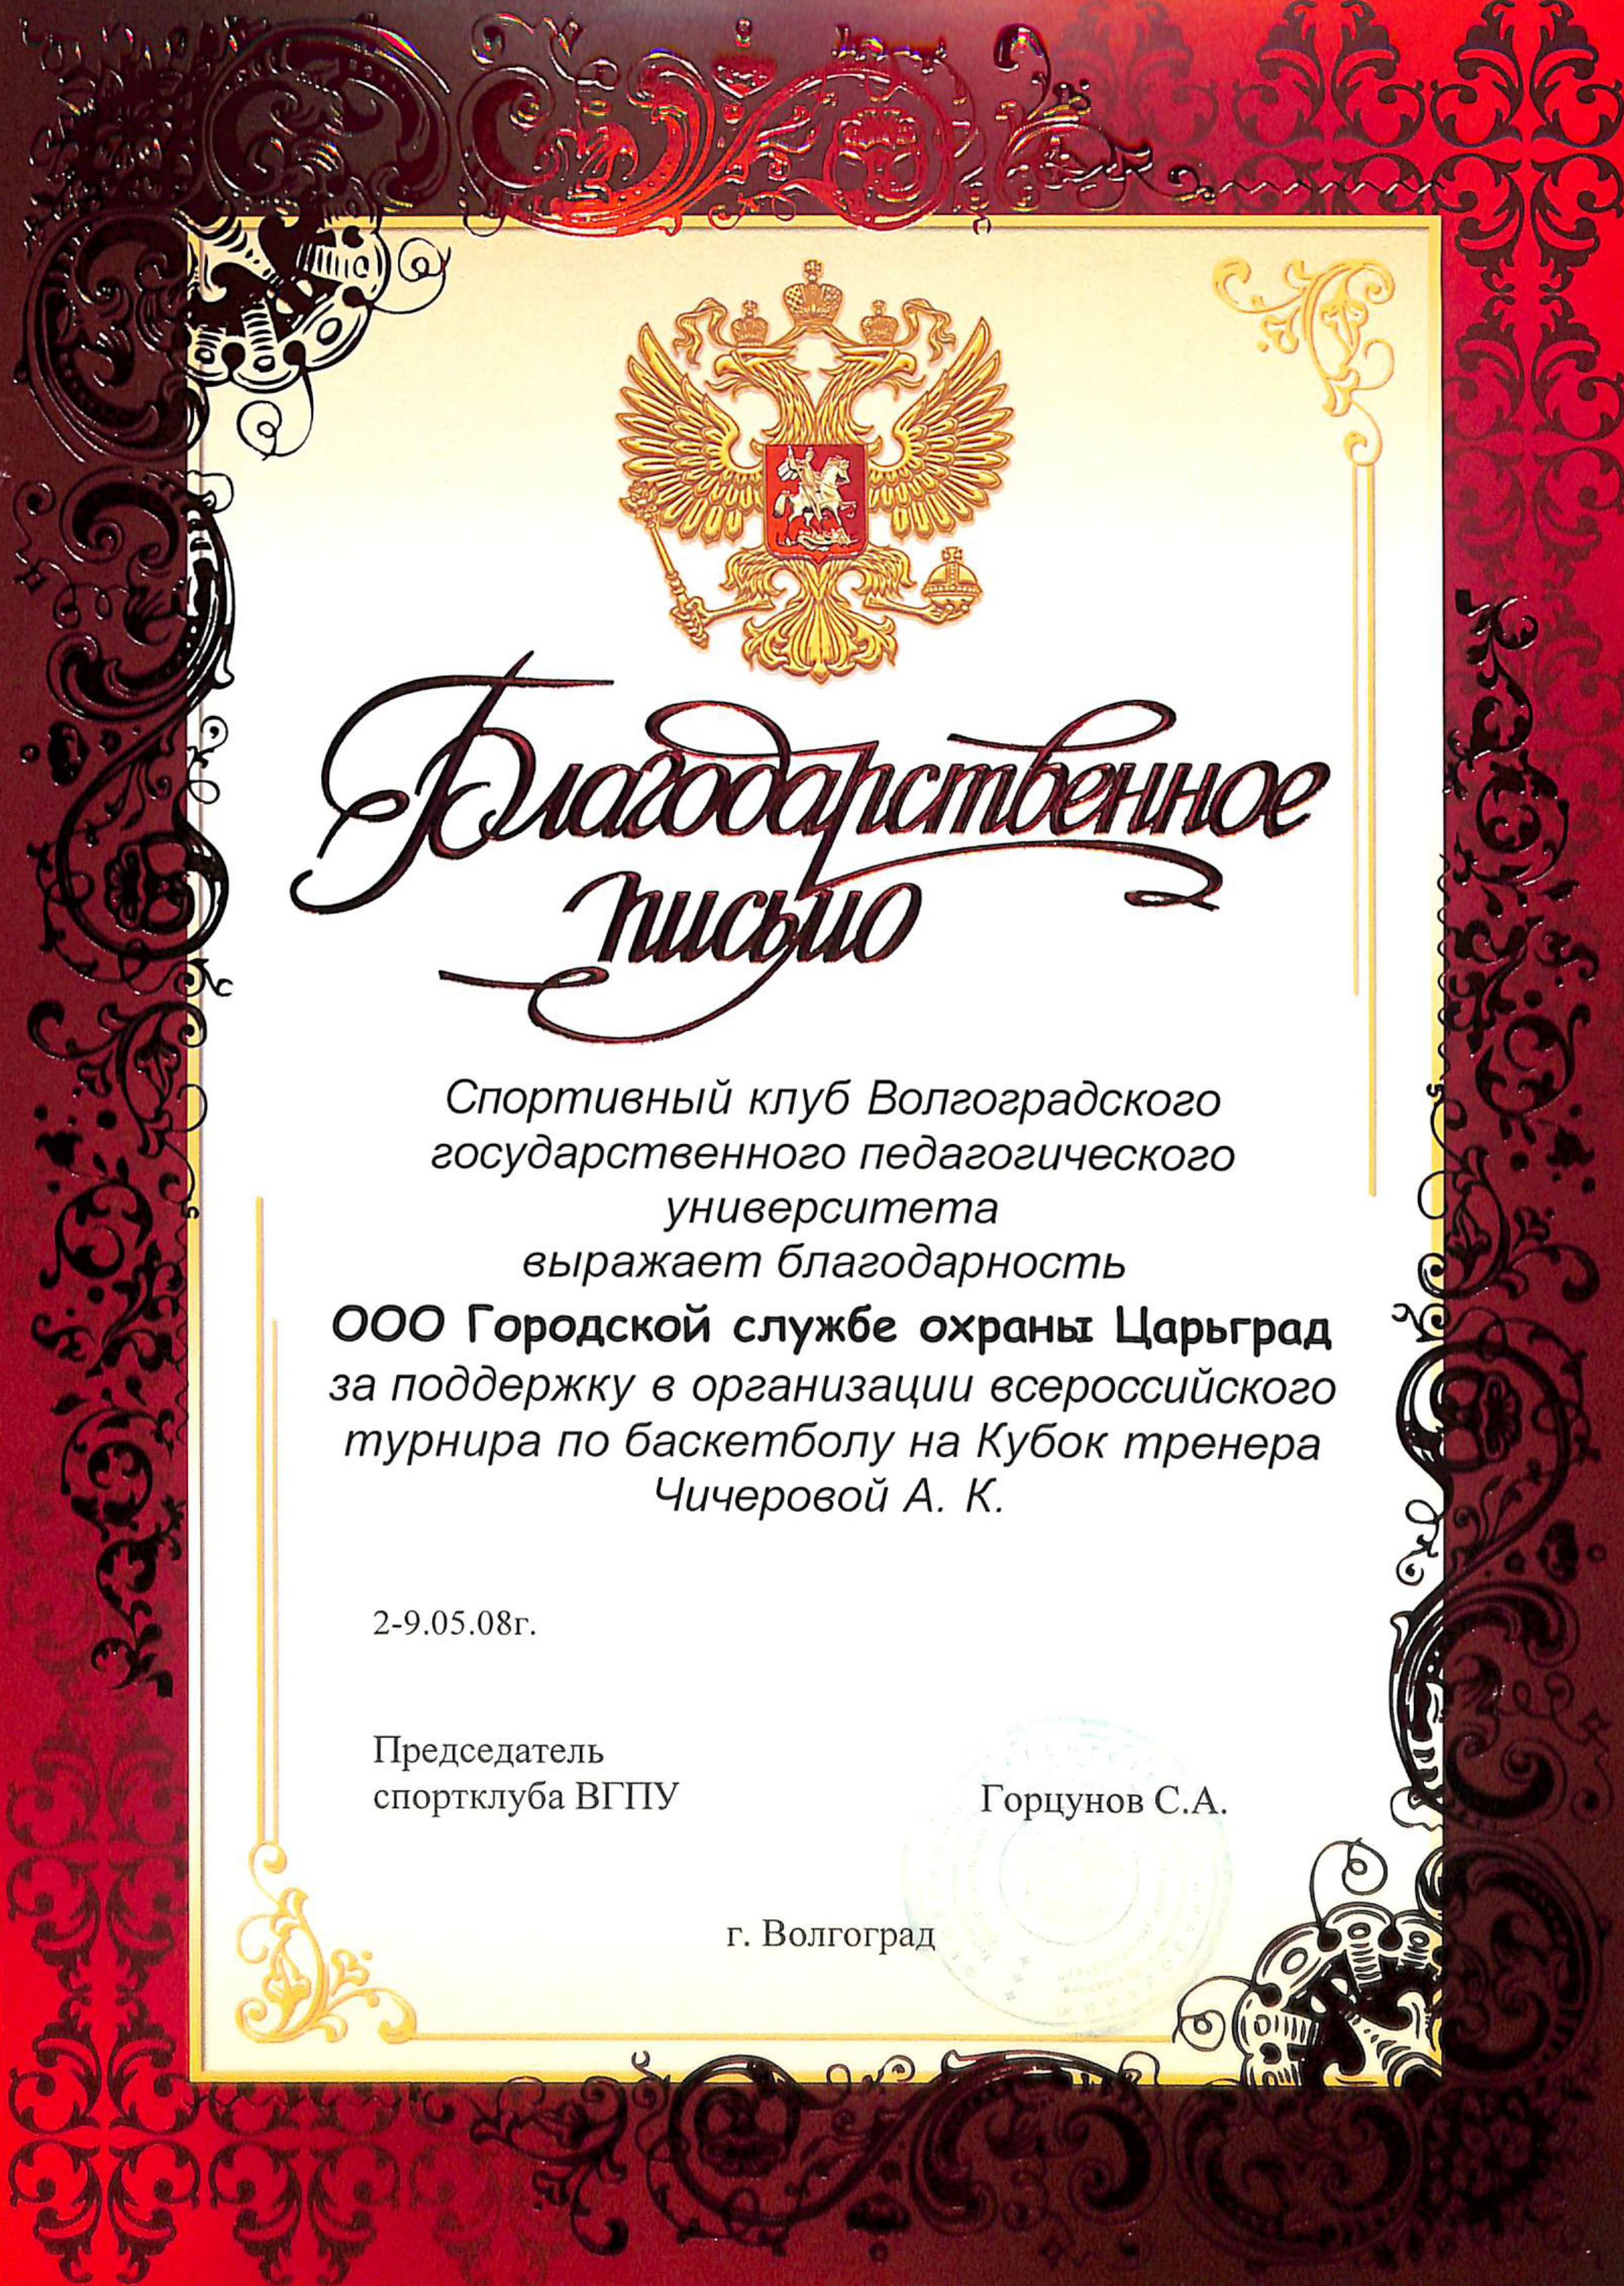 благодарность охранному агентству Царьград за поддержку в организации всероссийского турнира по баскетболу